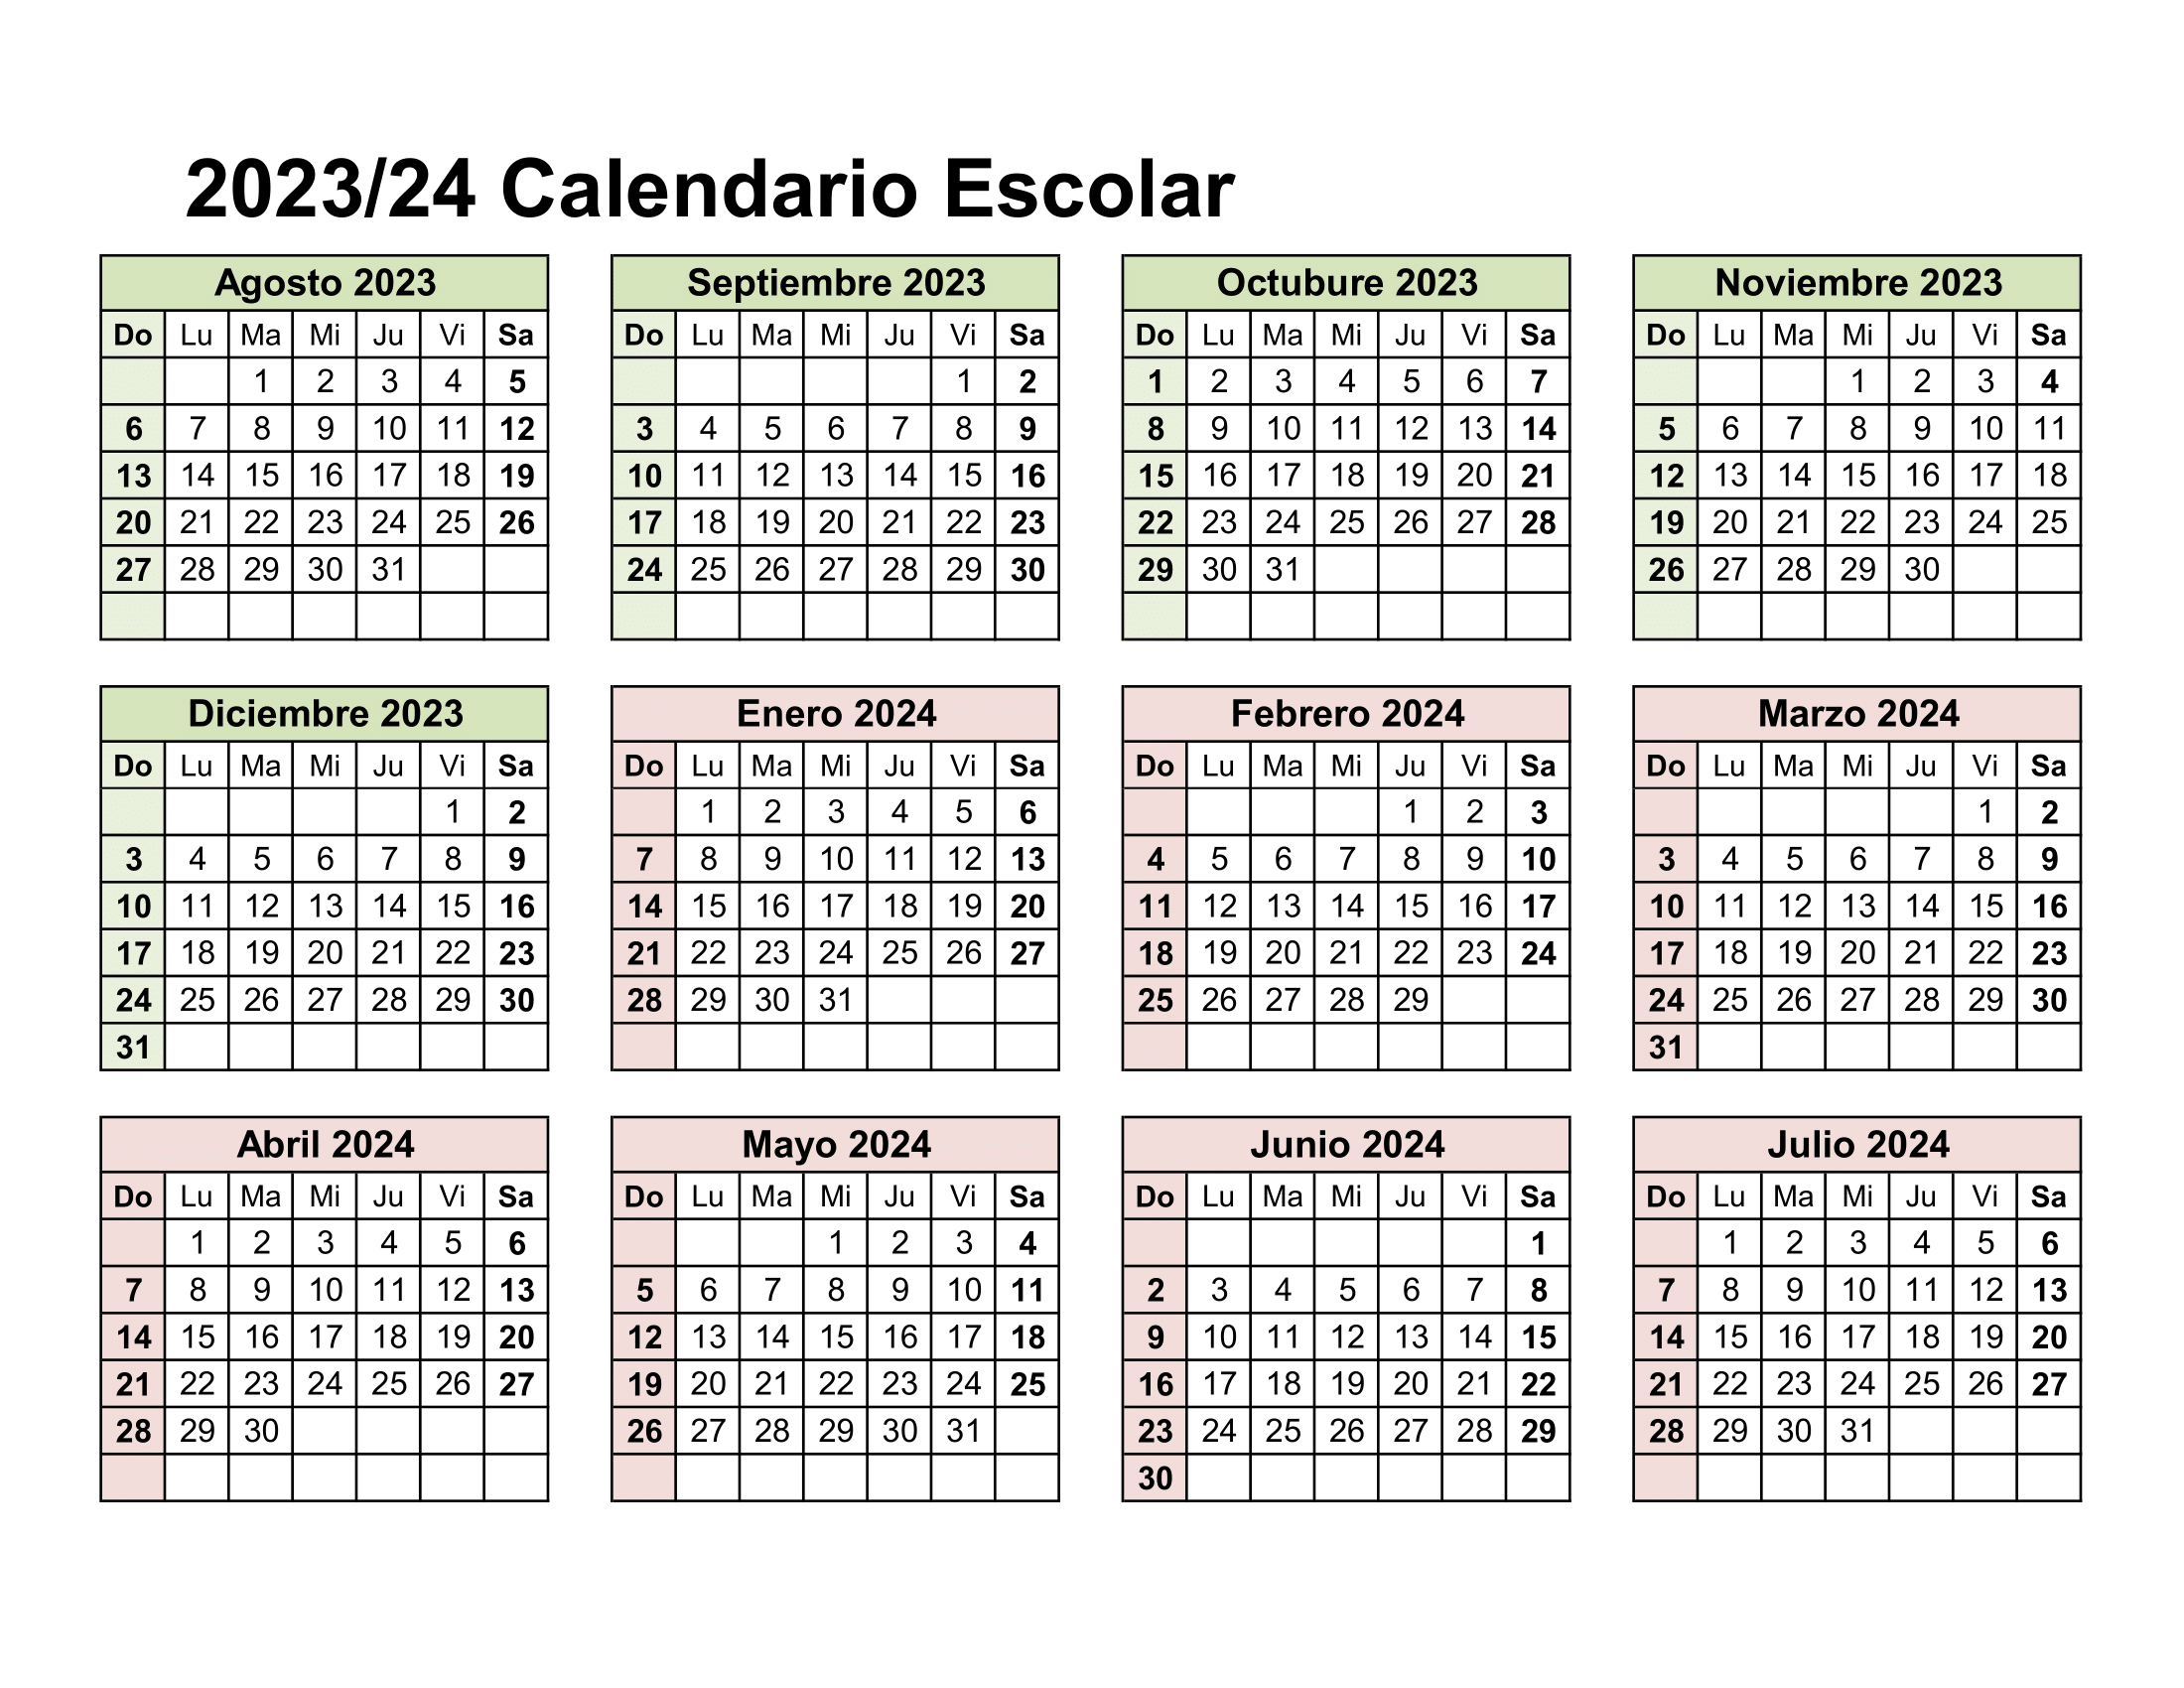 Calendario escolar 2023 - 2024